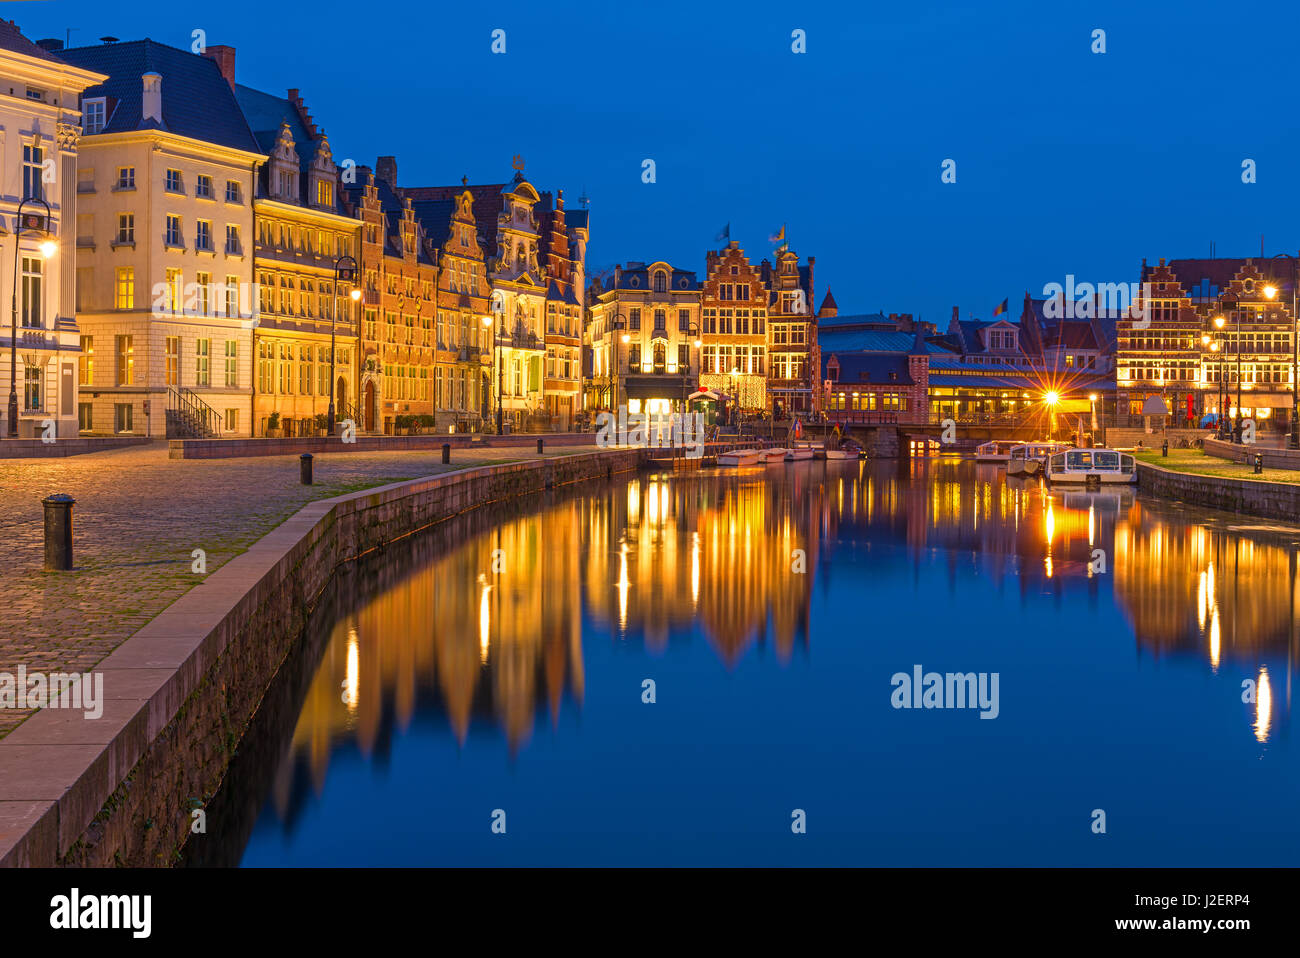 Der historischen Stadt Gent während der Dämmerung mit seiner mittelalterlichen Architektur und Gilde-Häusern und dem Fluss Leie, Belgien Stockfoto